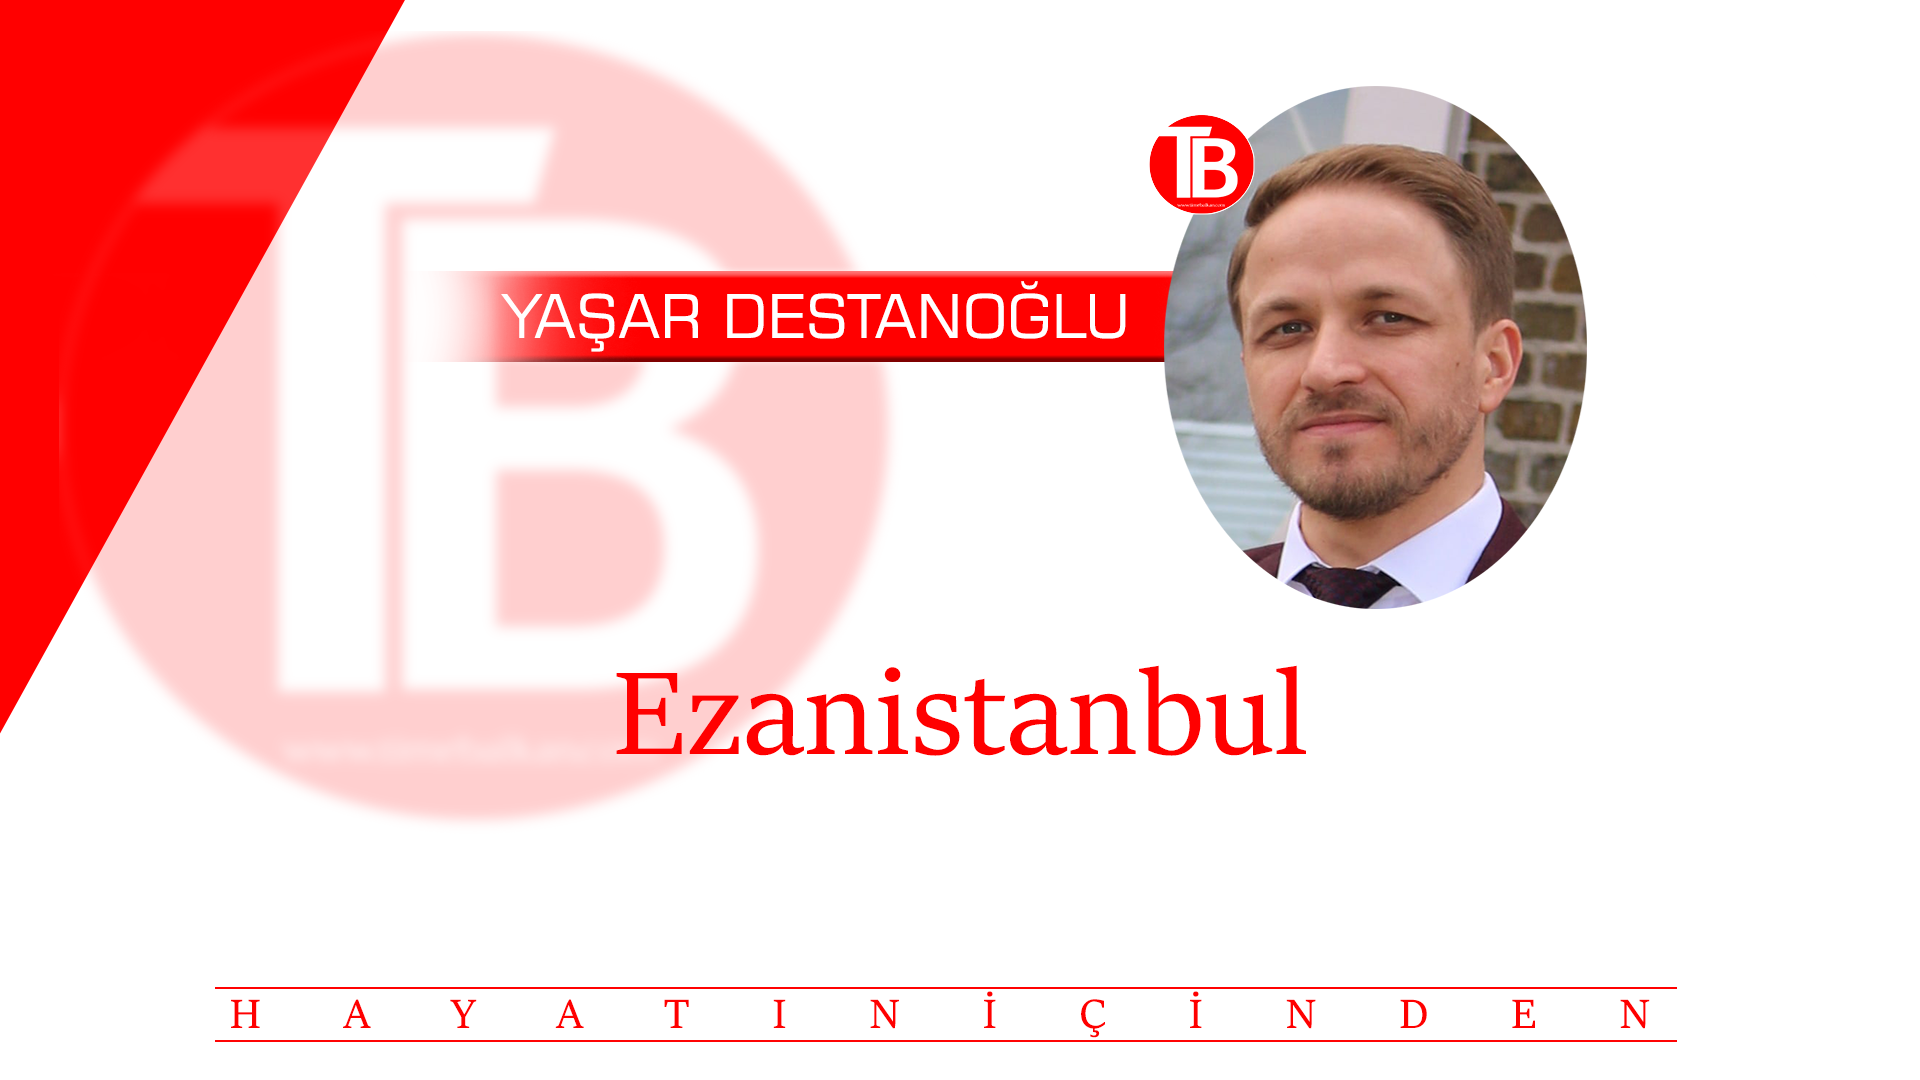 Ezanistanbul